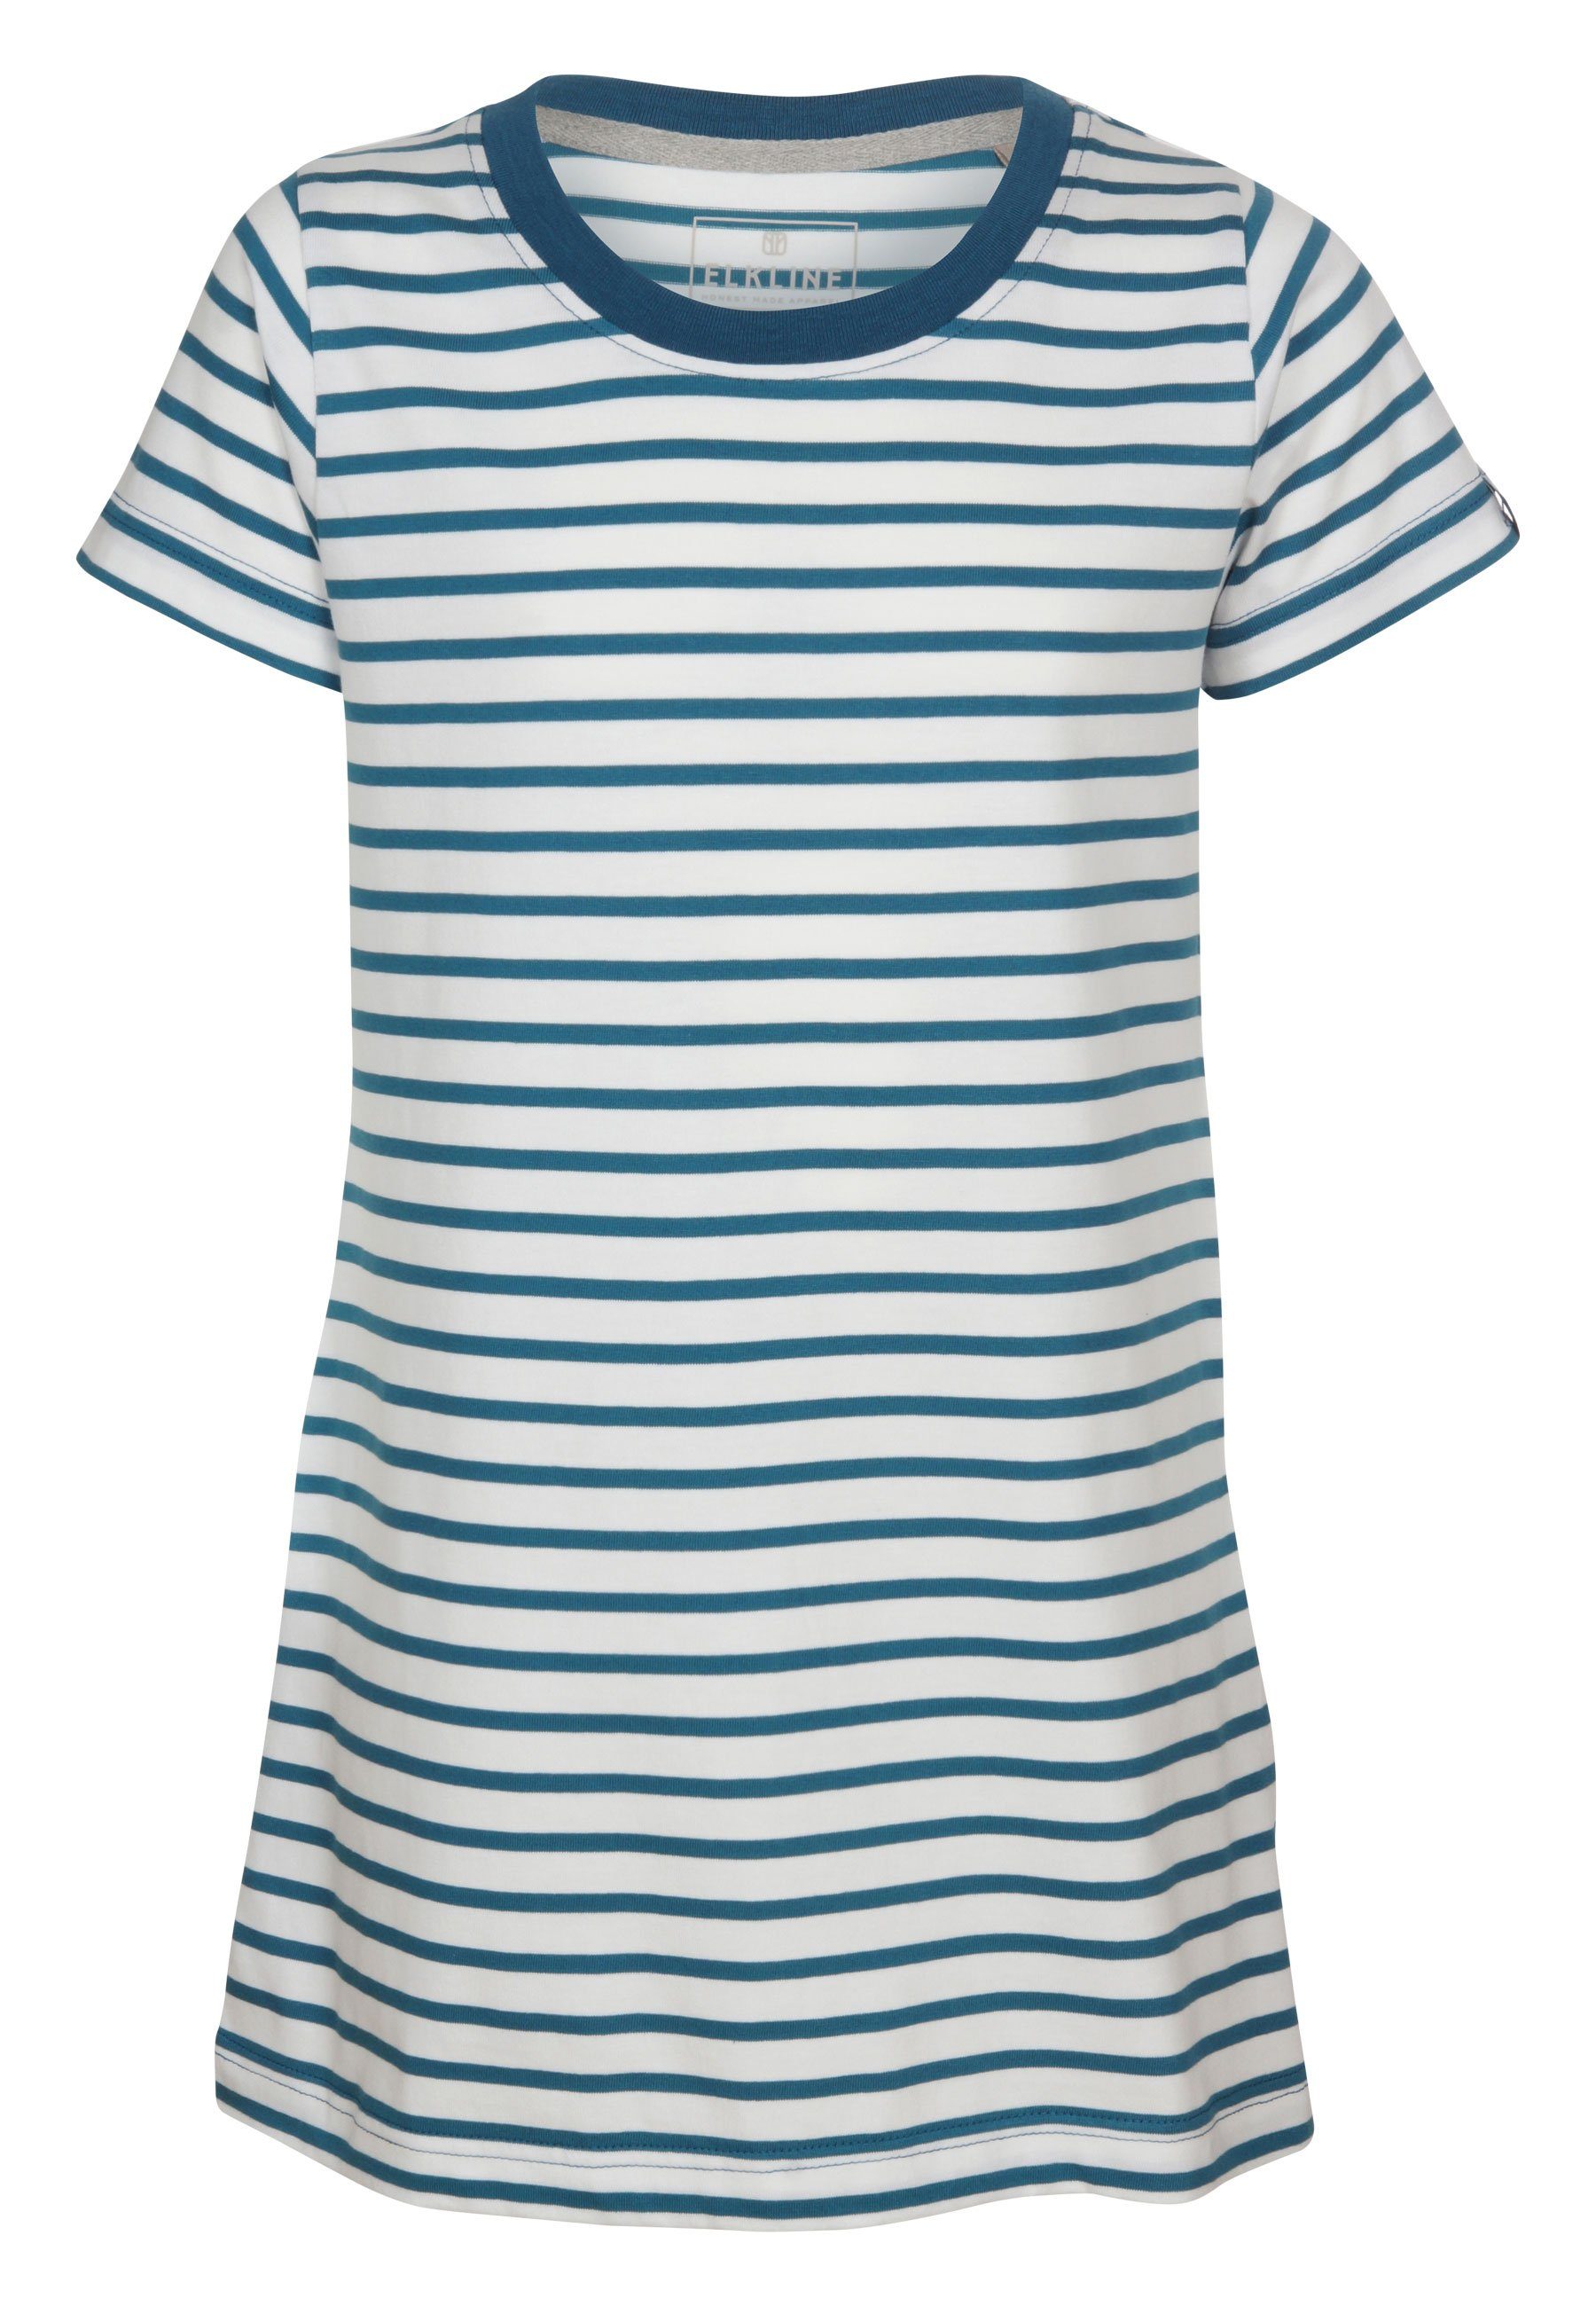 - Hanna Basic Elkline Sommerkleid Shirt-Kleid Streifen white blue coral